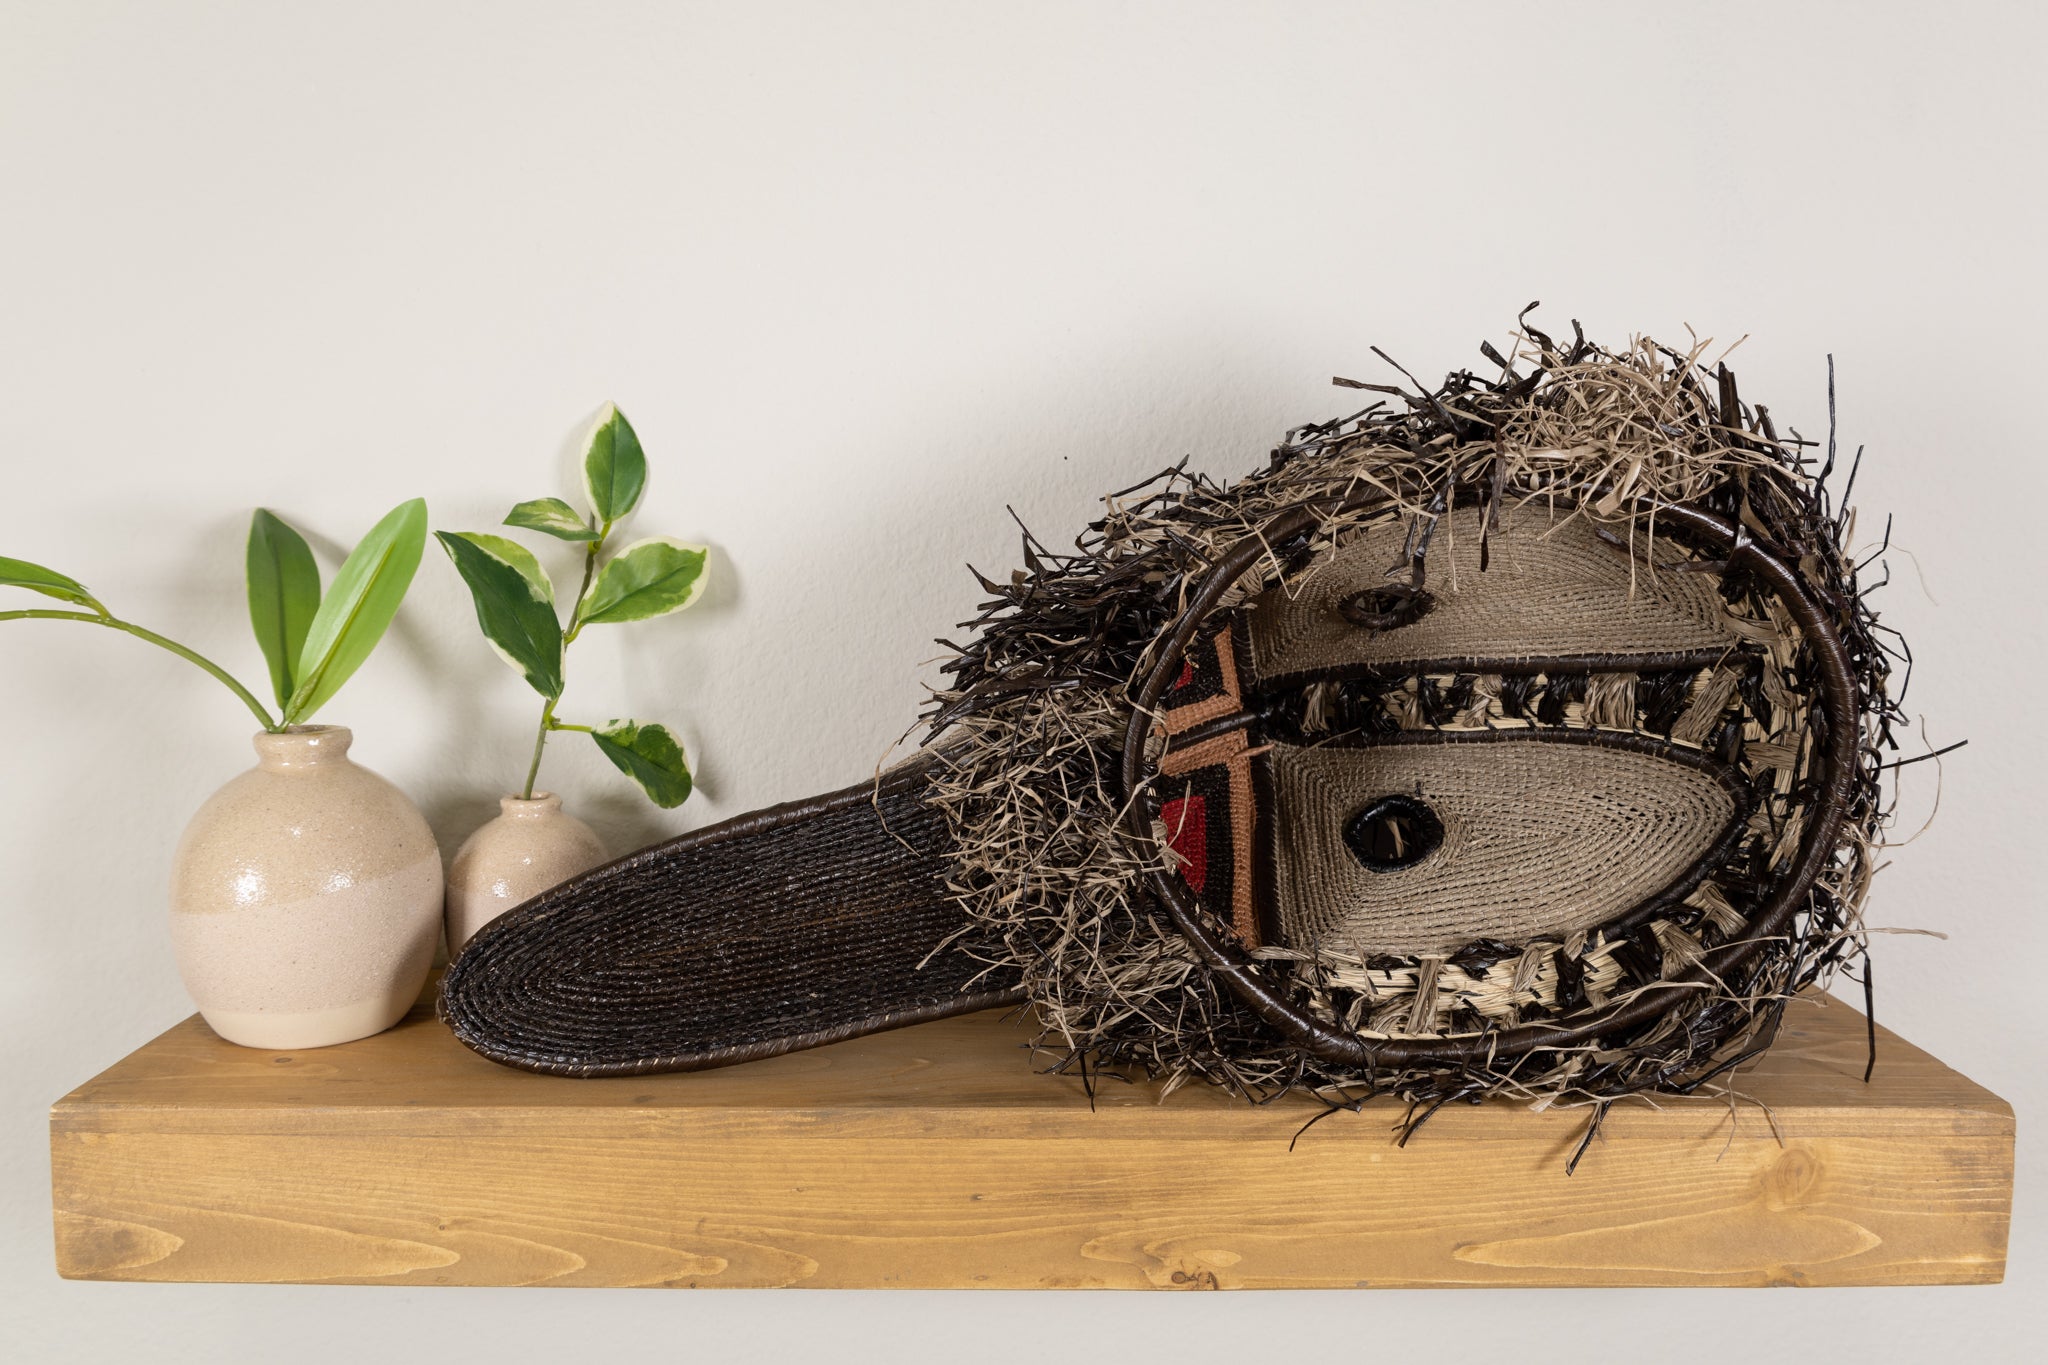 Shoebill Stork Mask